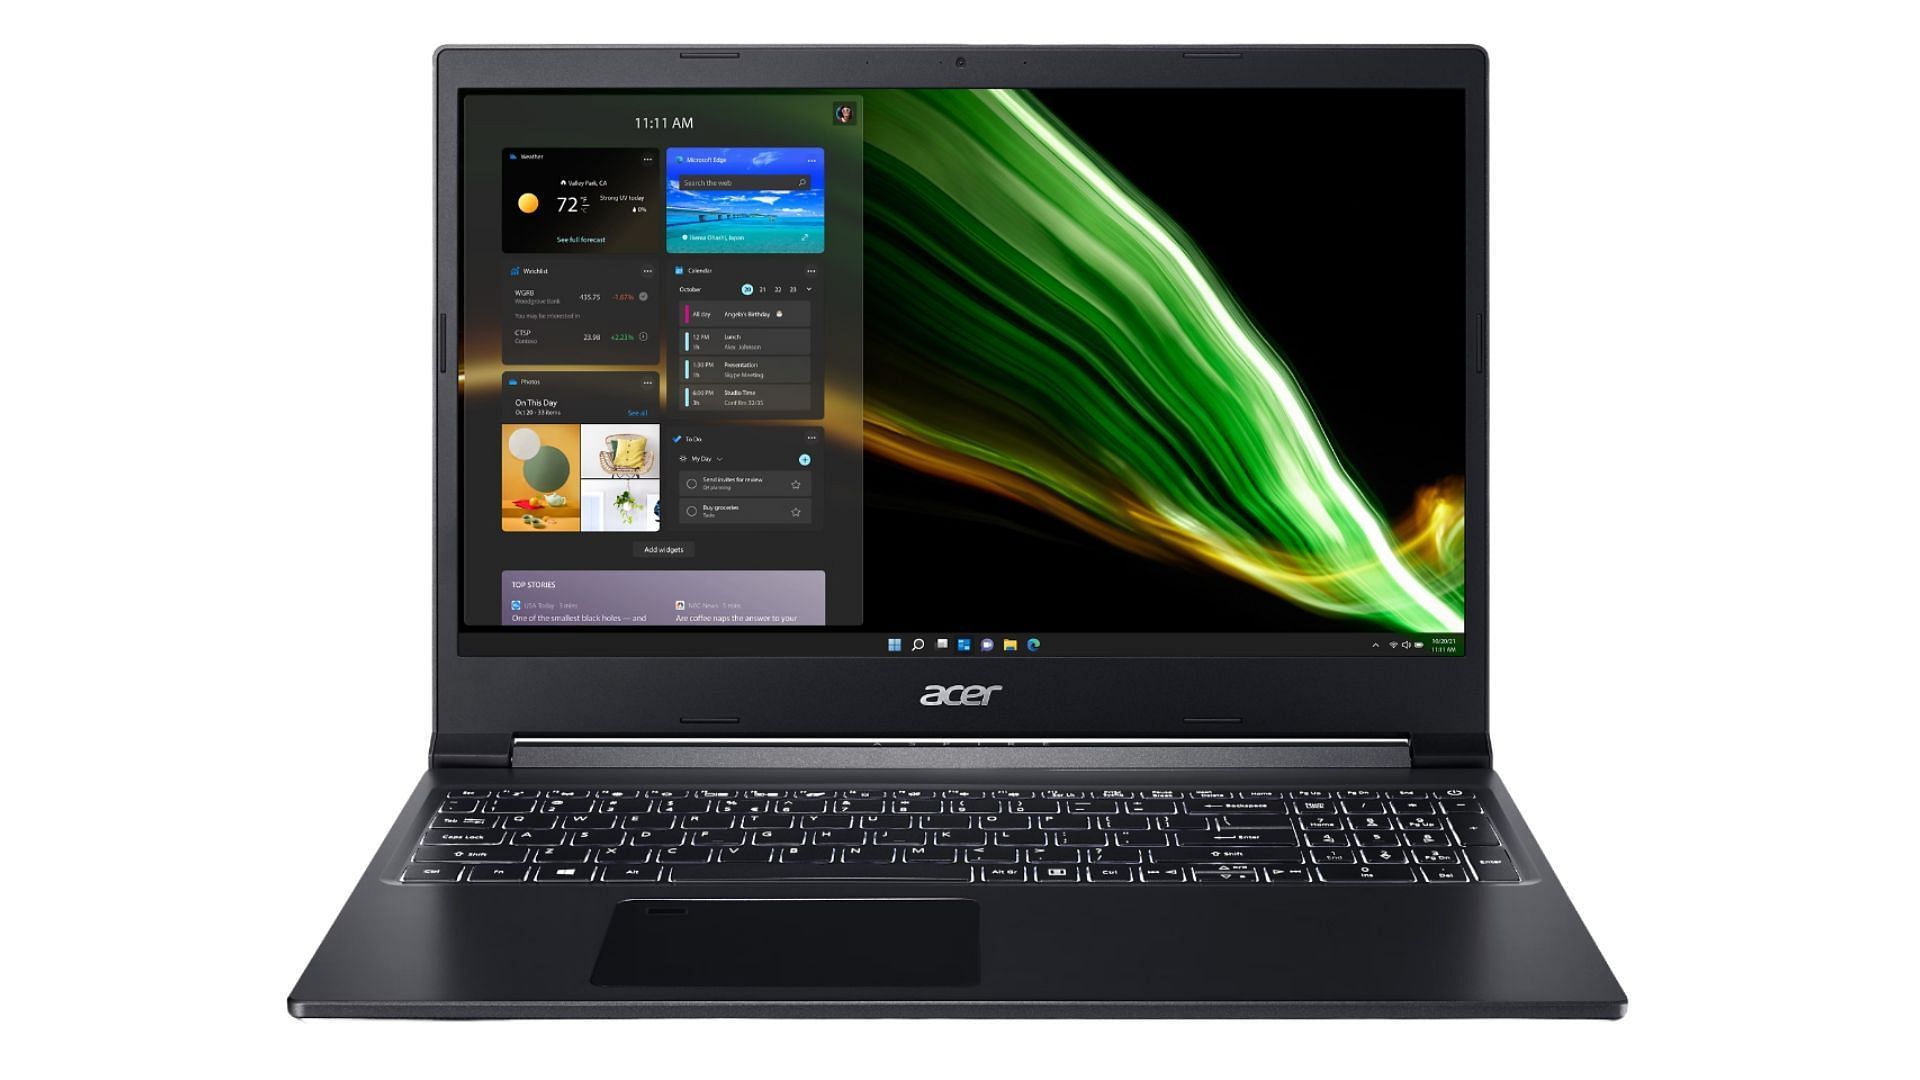 Acer Aspire 7 - best budget gaming laptop for F1 24 (Image via Acer)